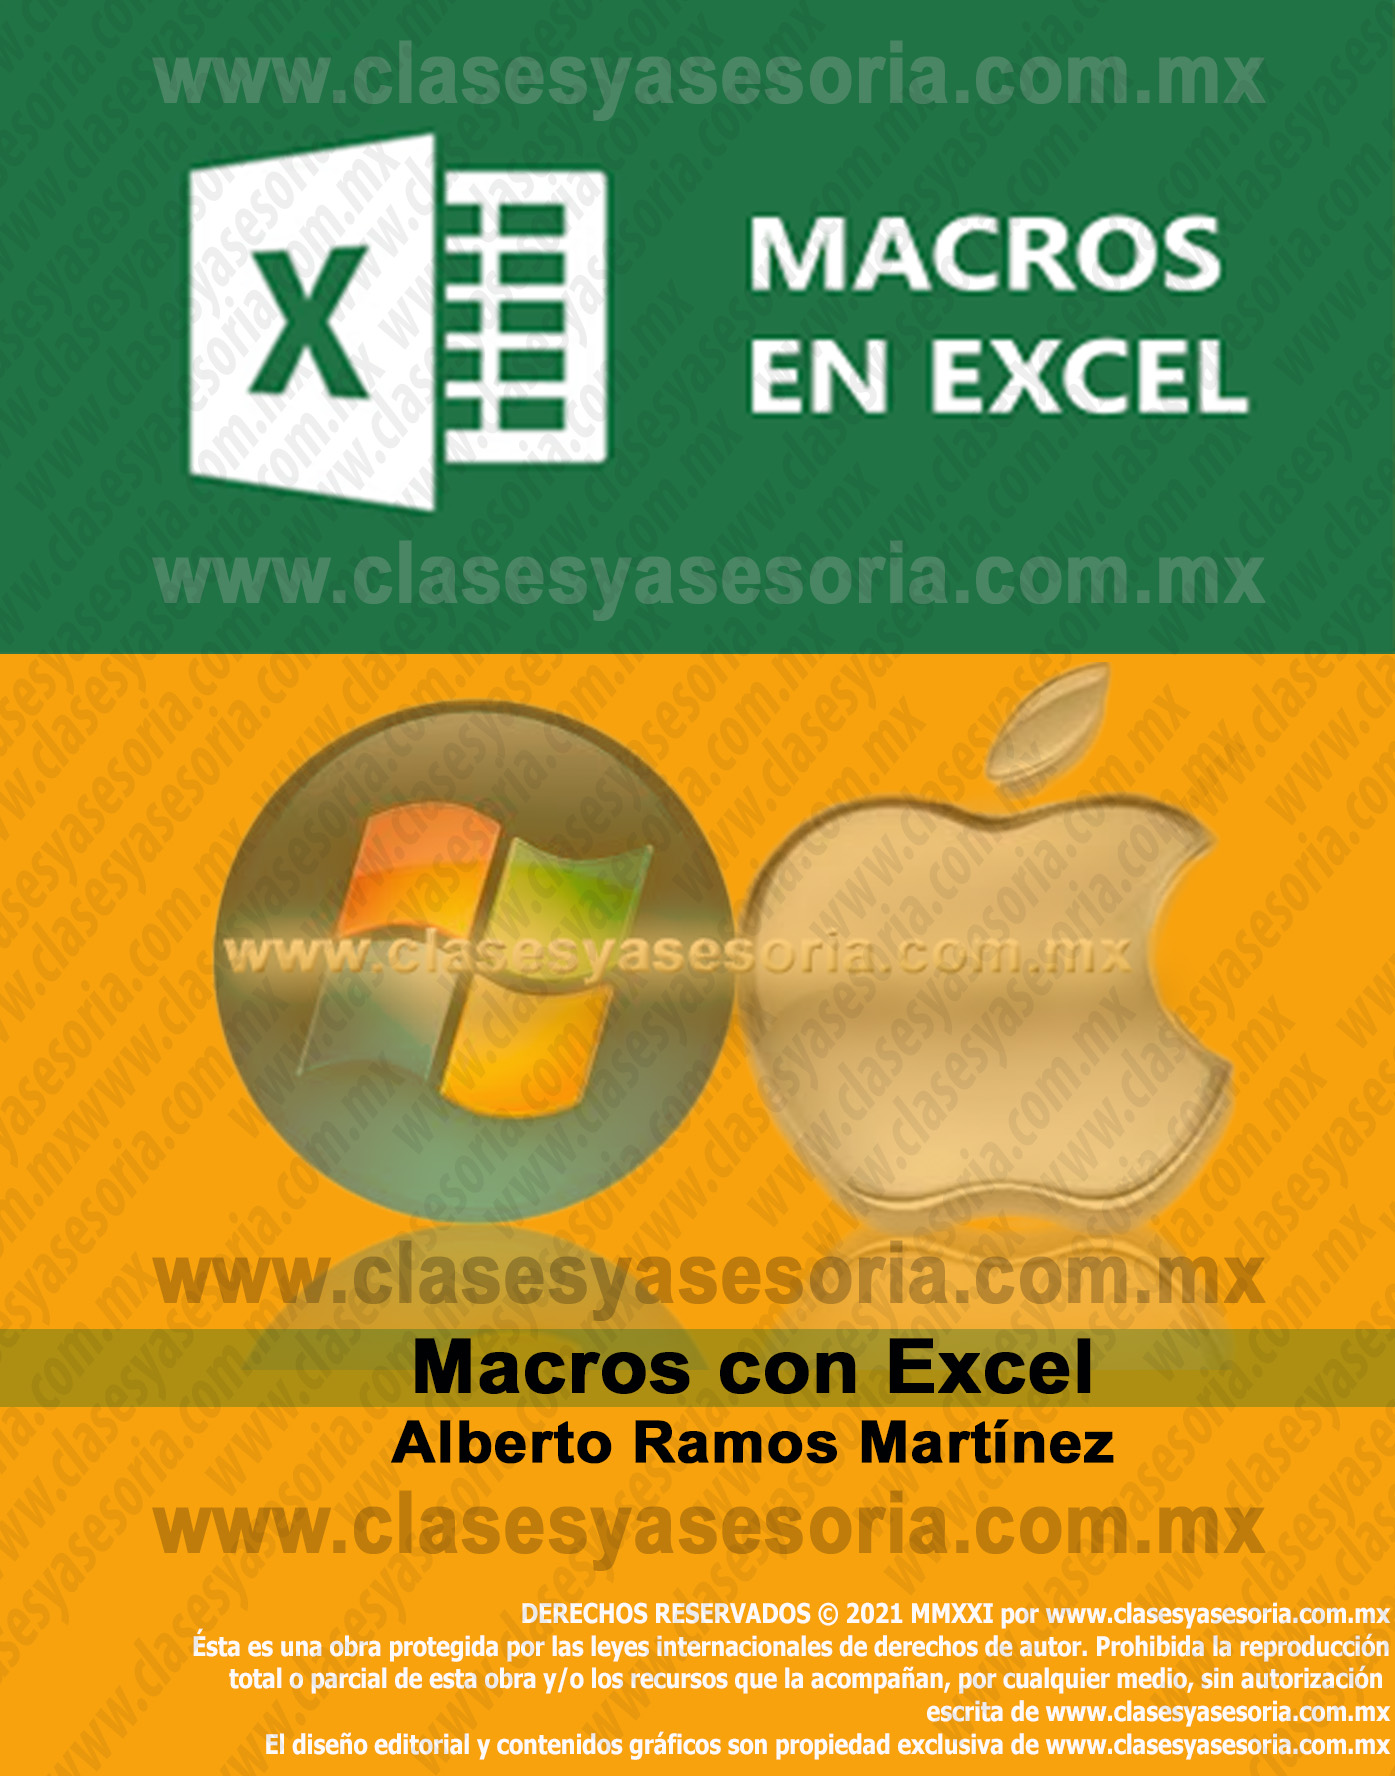 Macros con Excel